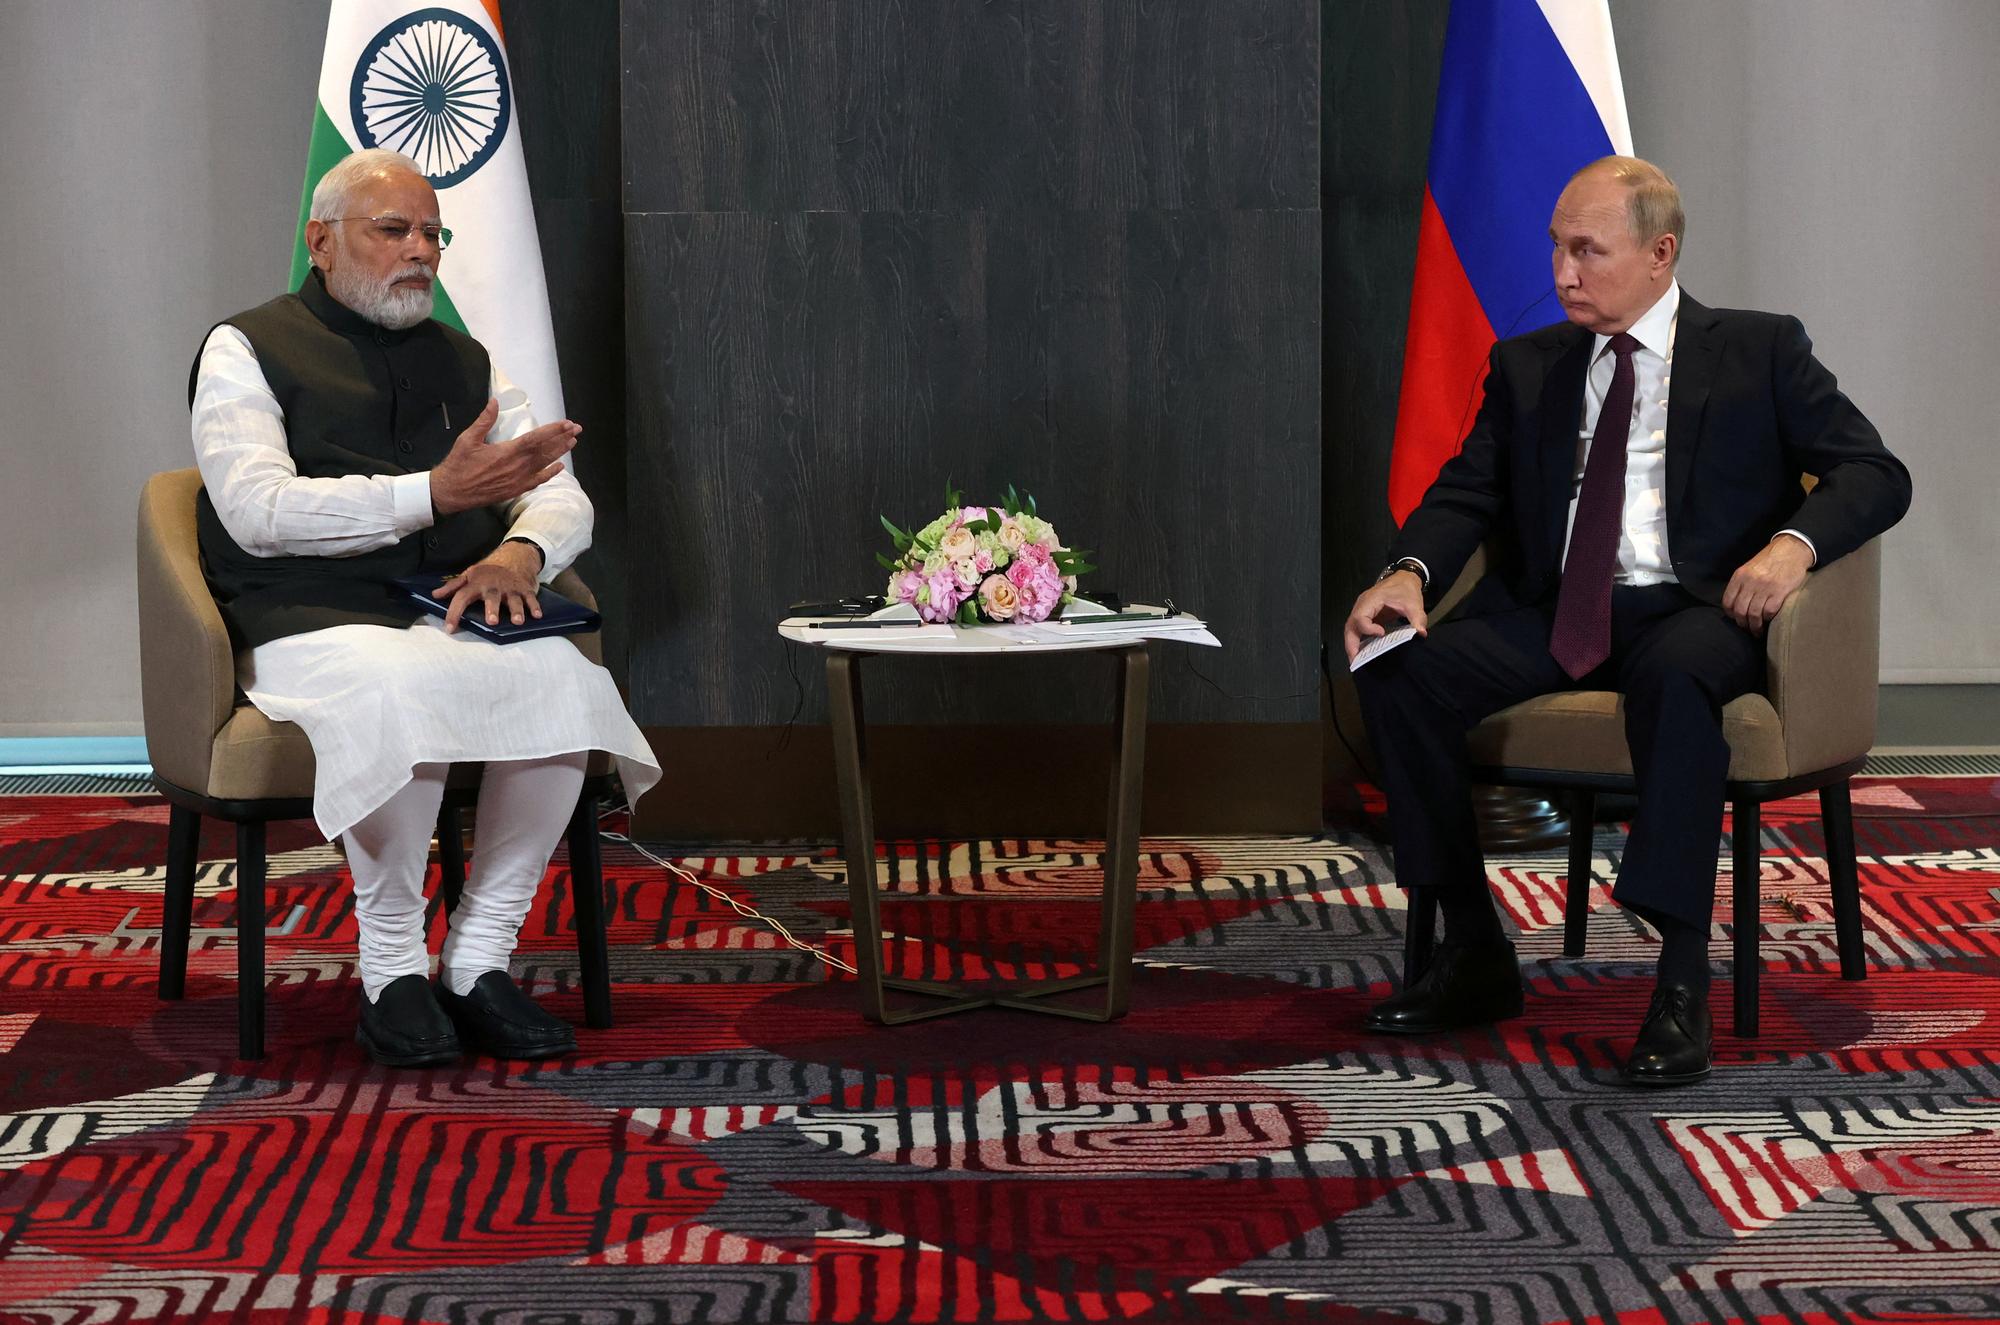 "L'heure n'est pas à la guerre", a déclaré Narendra Modi (à gauche), lors de son échange avec Vladimir Poutine à Samarcande. [REUTERS - Sputnik/Alexander Demyanchuk/Pool]